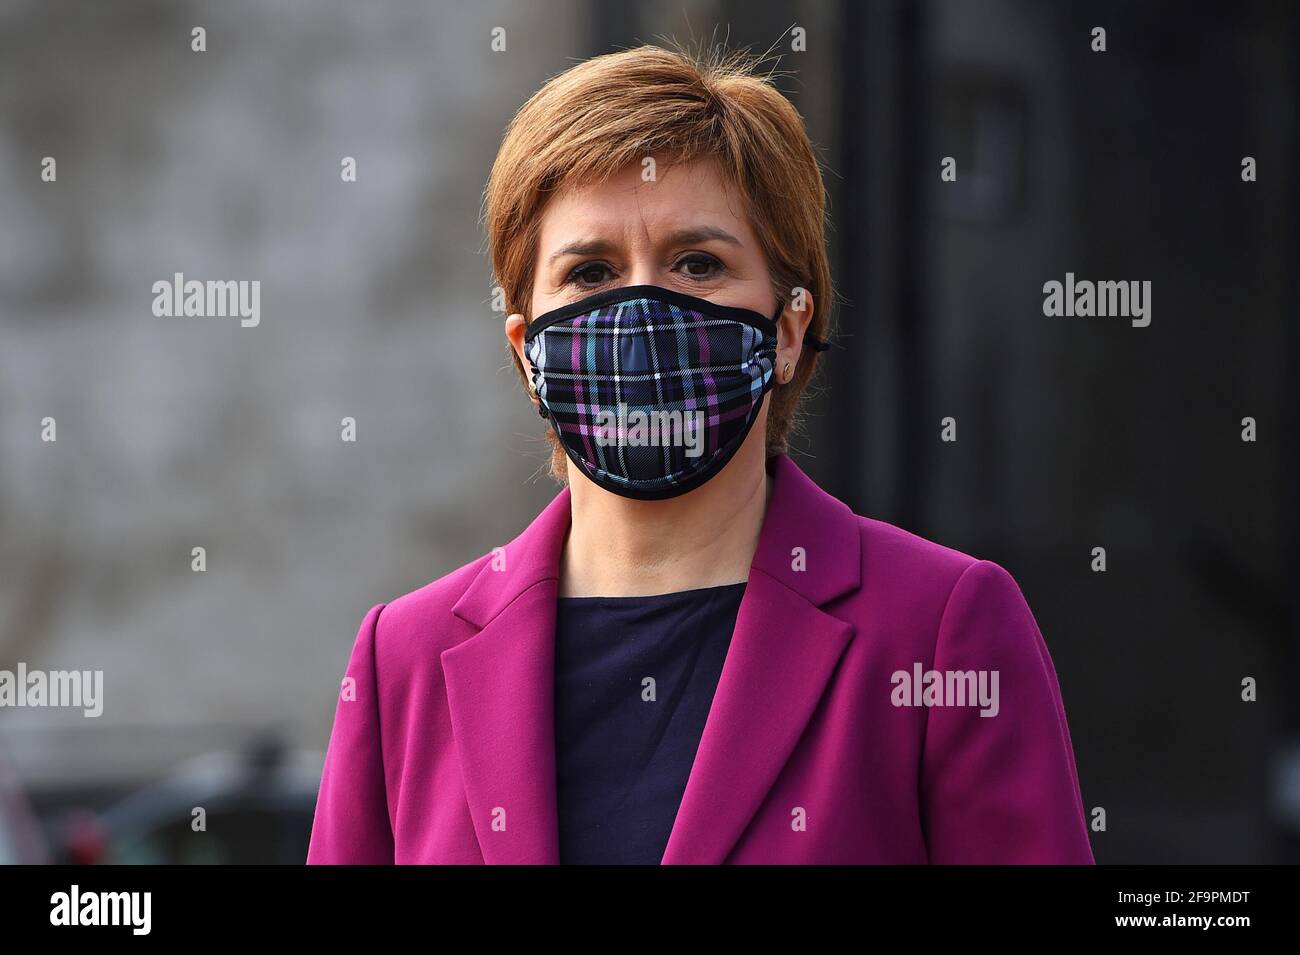 Schottlands erste Ministerin Nicola Sturgeon, Vorsitzende der Scottish National Party (SNP), trägt eine schützende Gesichtsmaske, während sie in South Queensferry für die schottischen Parlamentswahlen kämpft. Bilddatum: Dienstag, 20. April 2021. Stockfoto